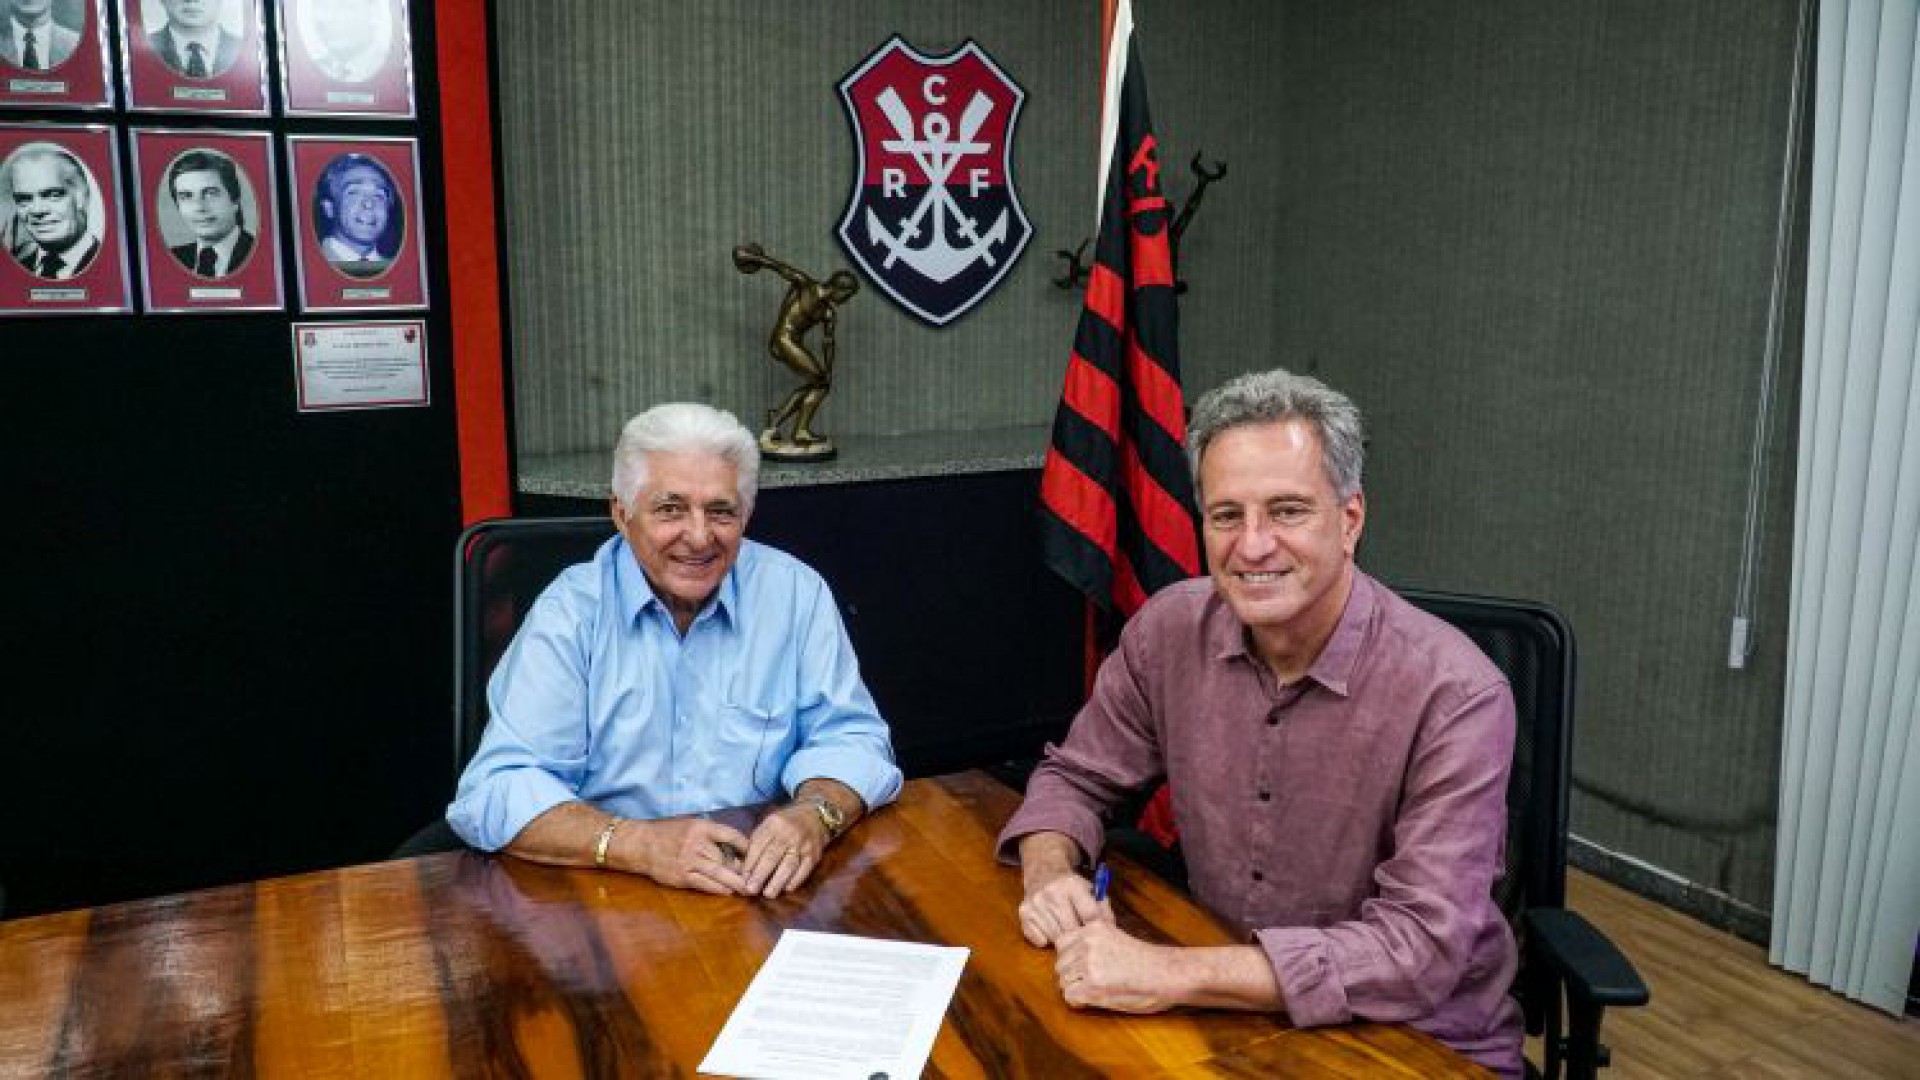 Presidentes do Grêmio Pague Menos e Flamengo, Deusmar Queirós e Rodolfo Landim assinam contrato de parceria entre os clubes (Foto: DIVULGAÇÃO)